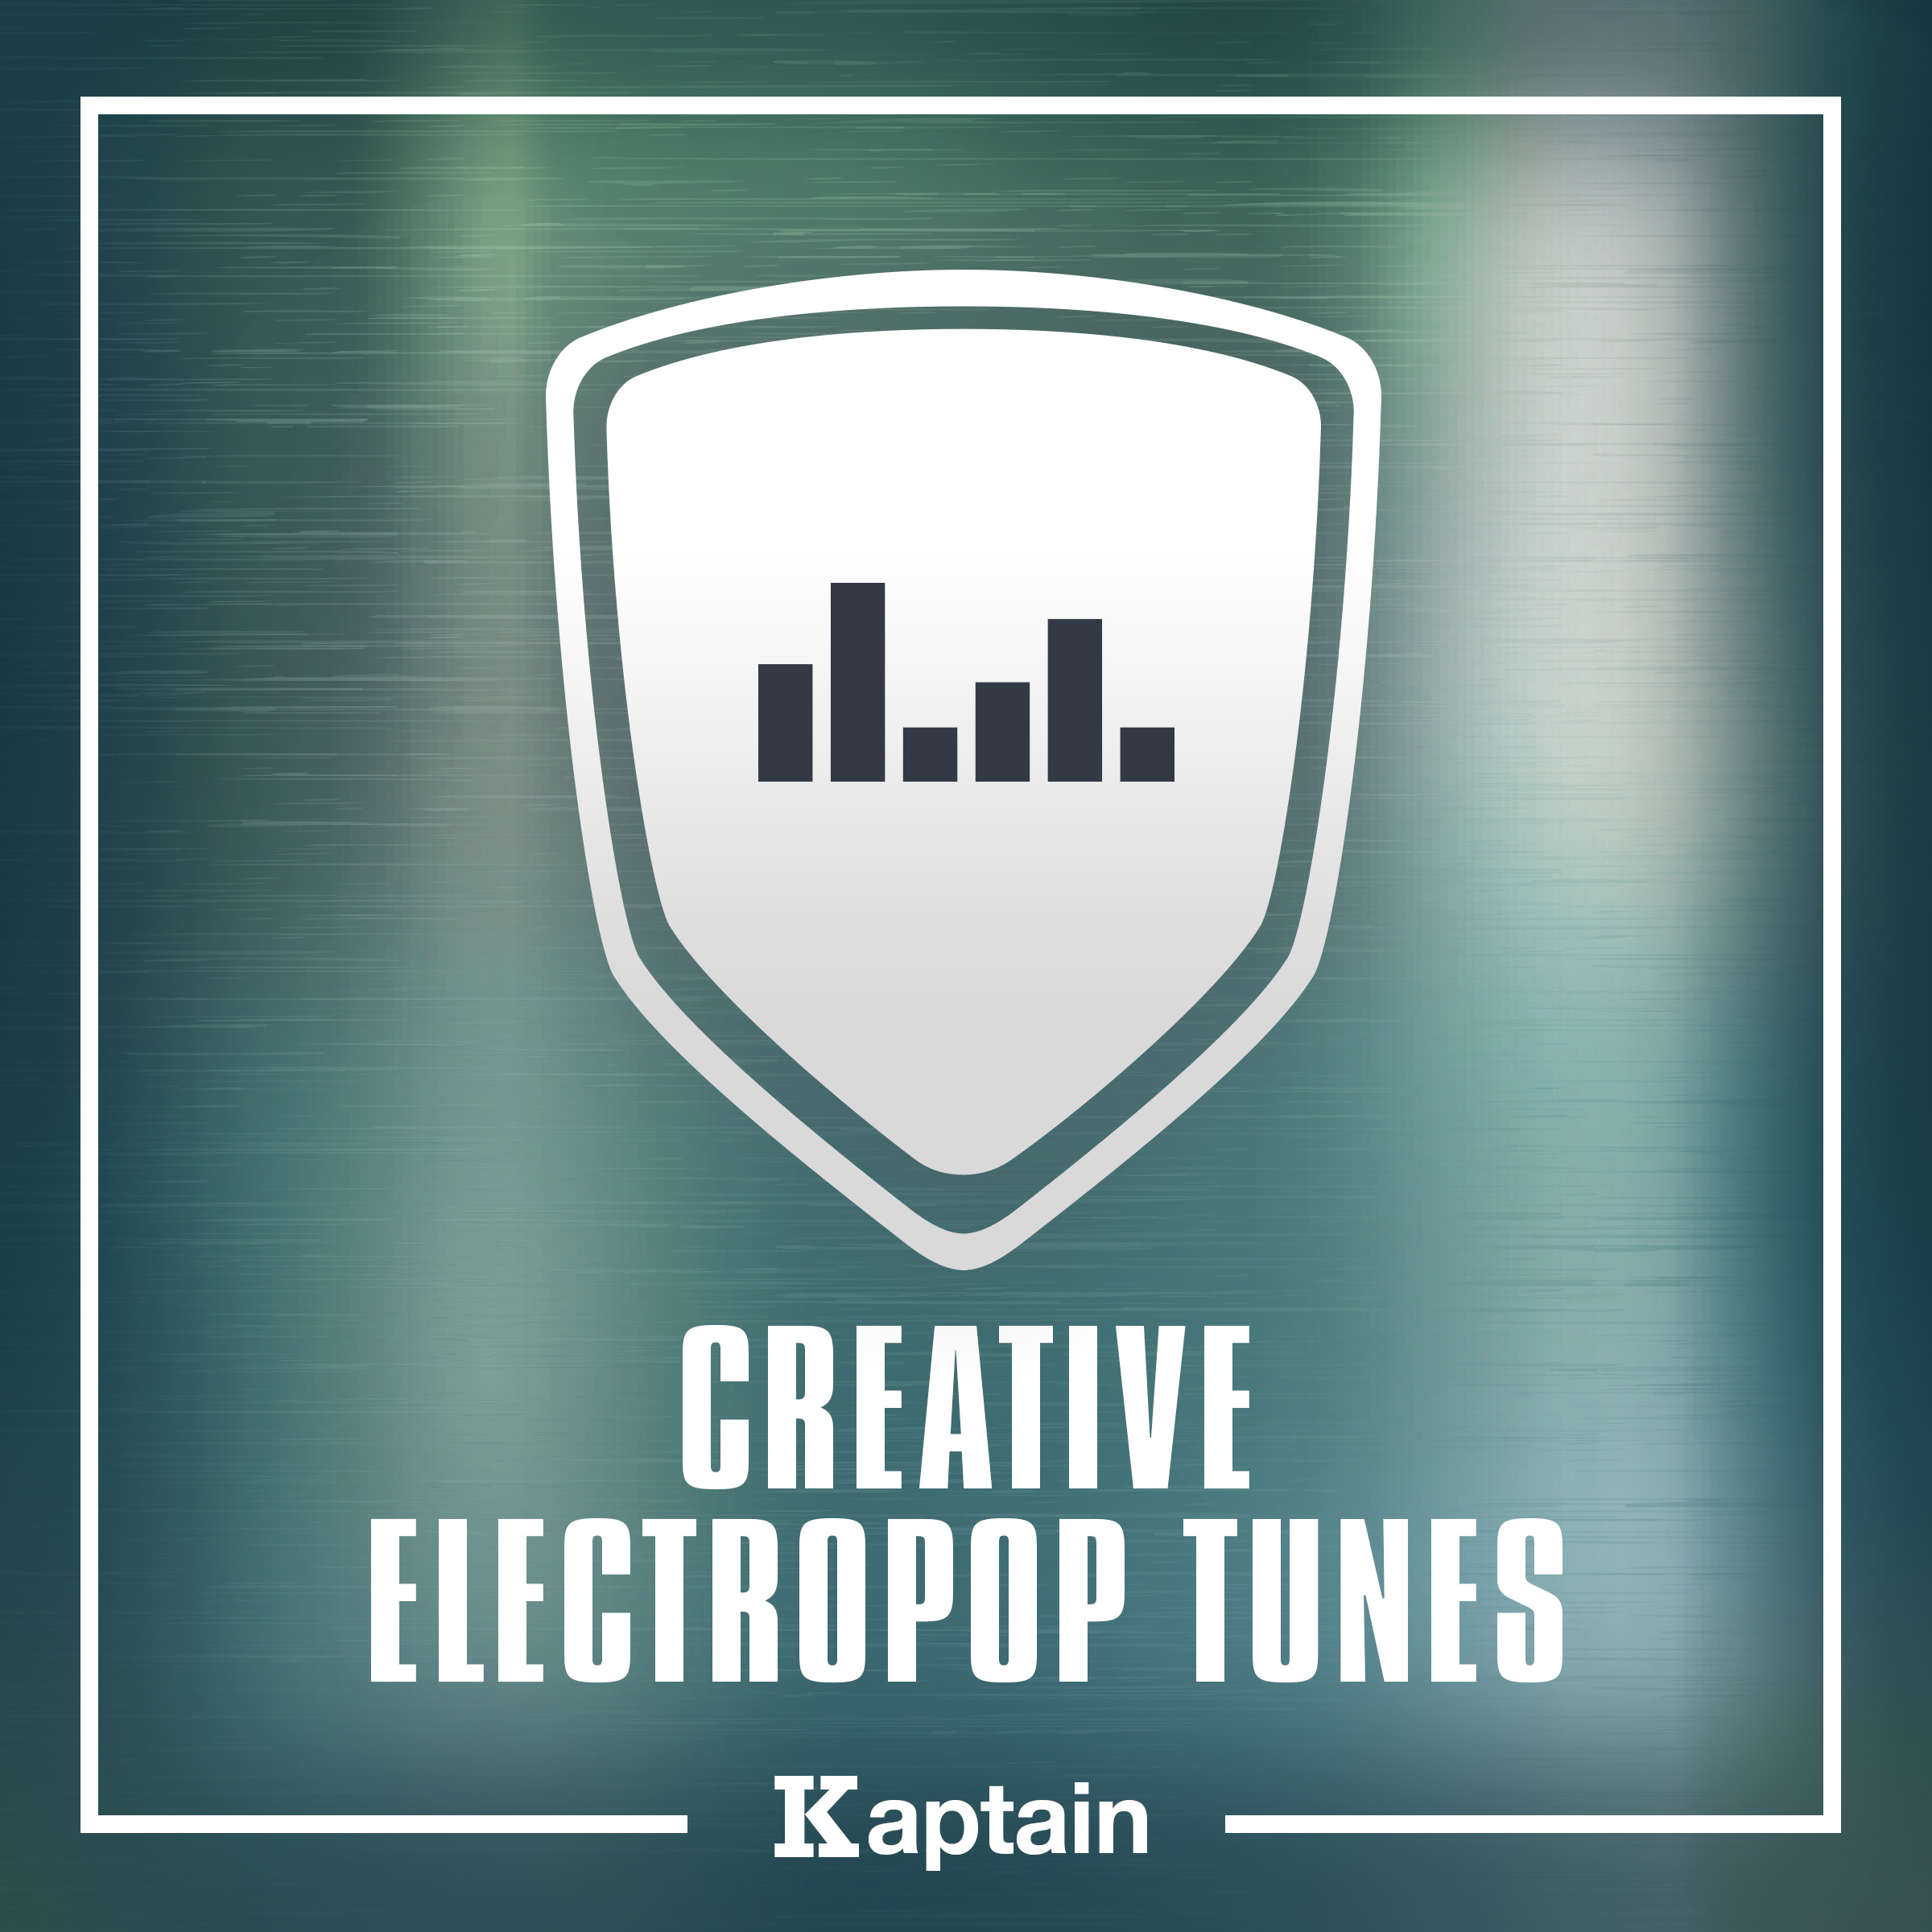 Creative Electropop Tunes